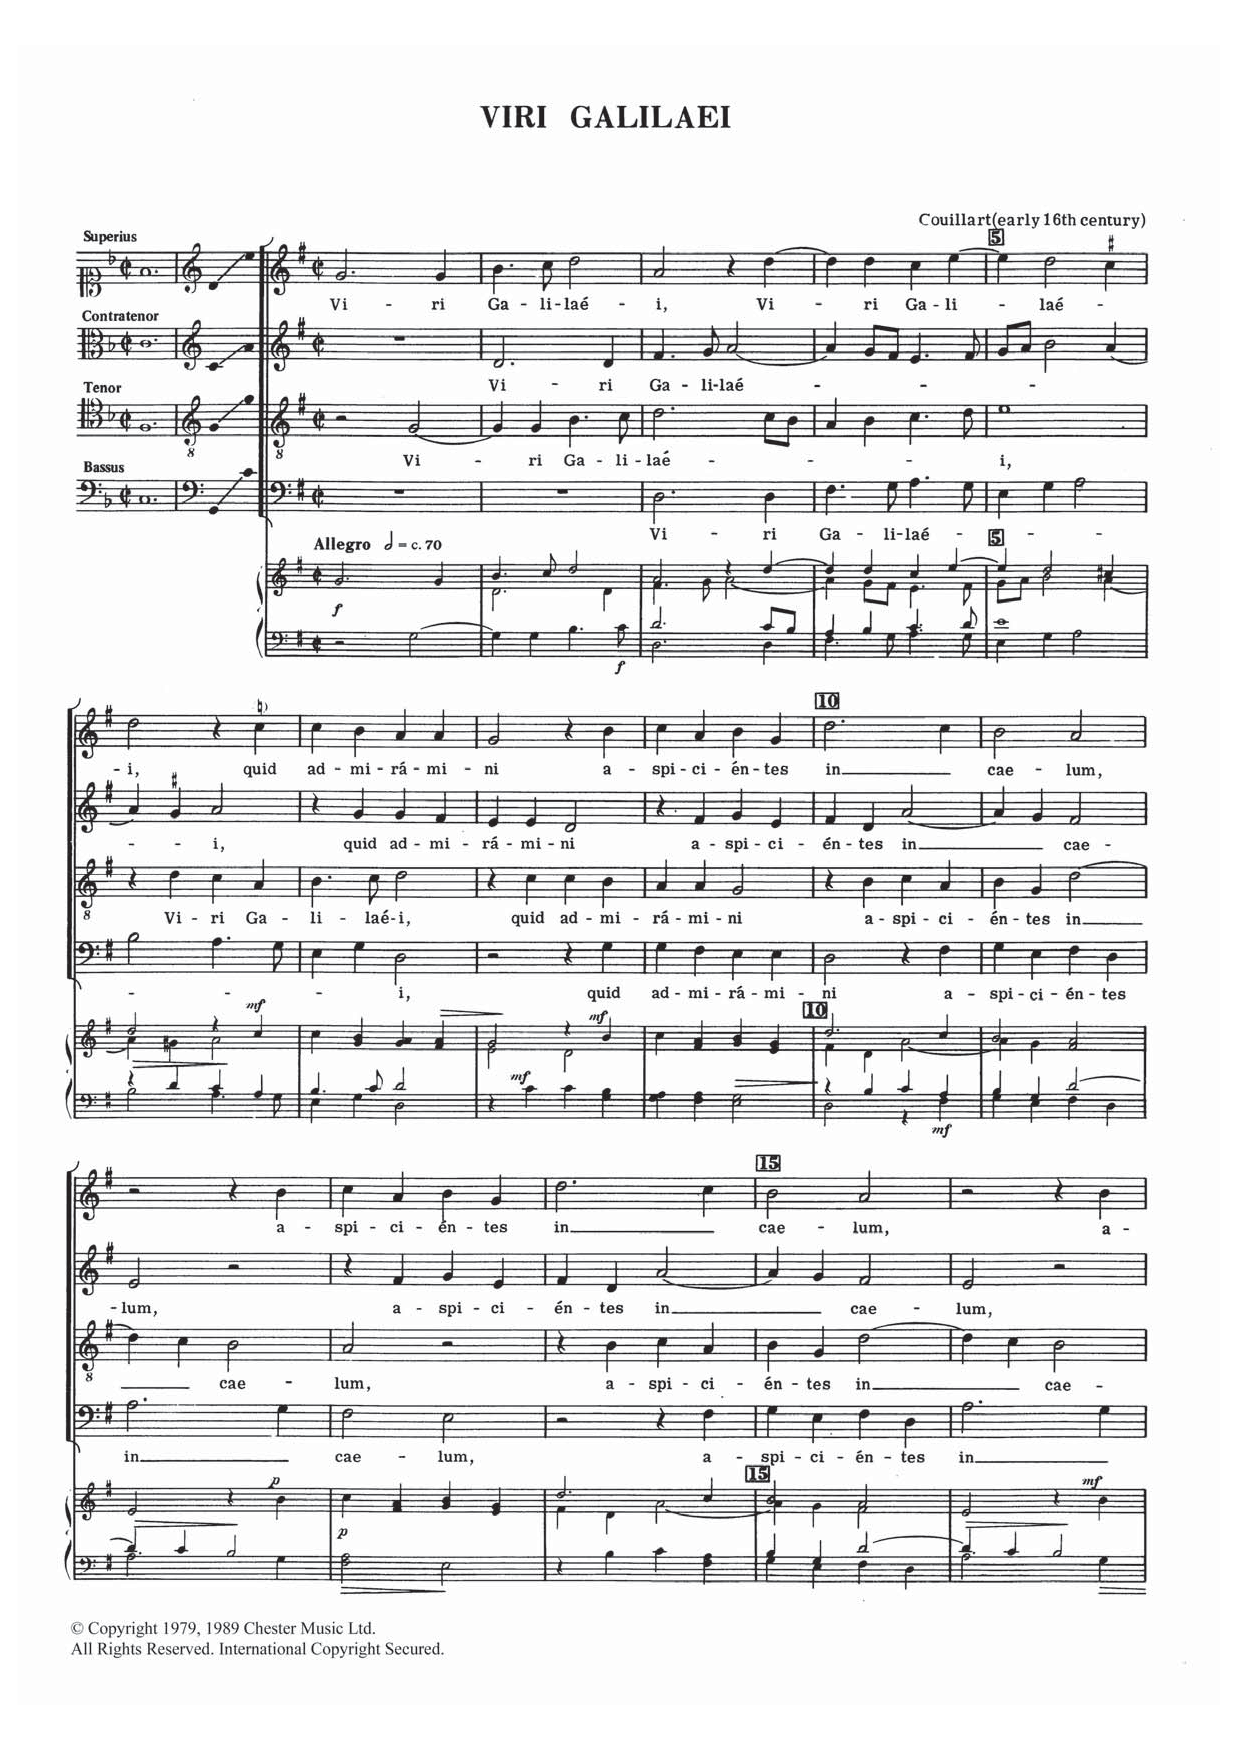 Viri Galilaei (Choir) von Dulos Couillart